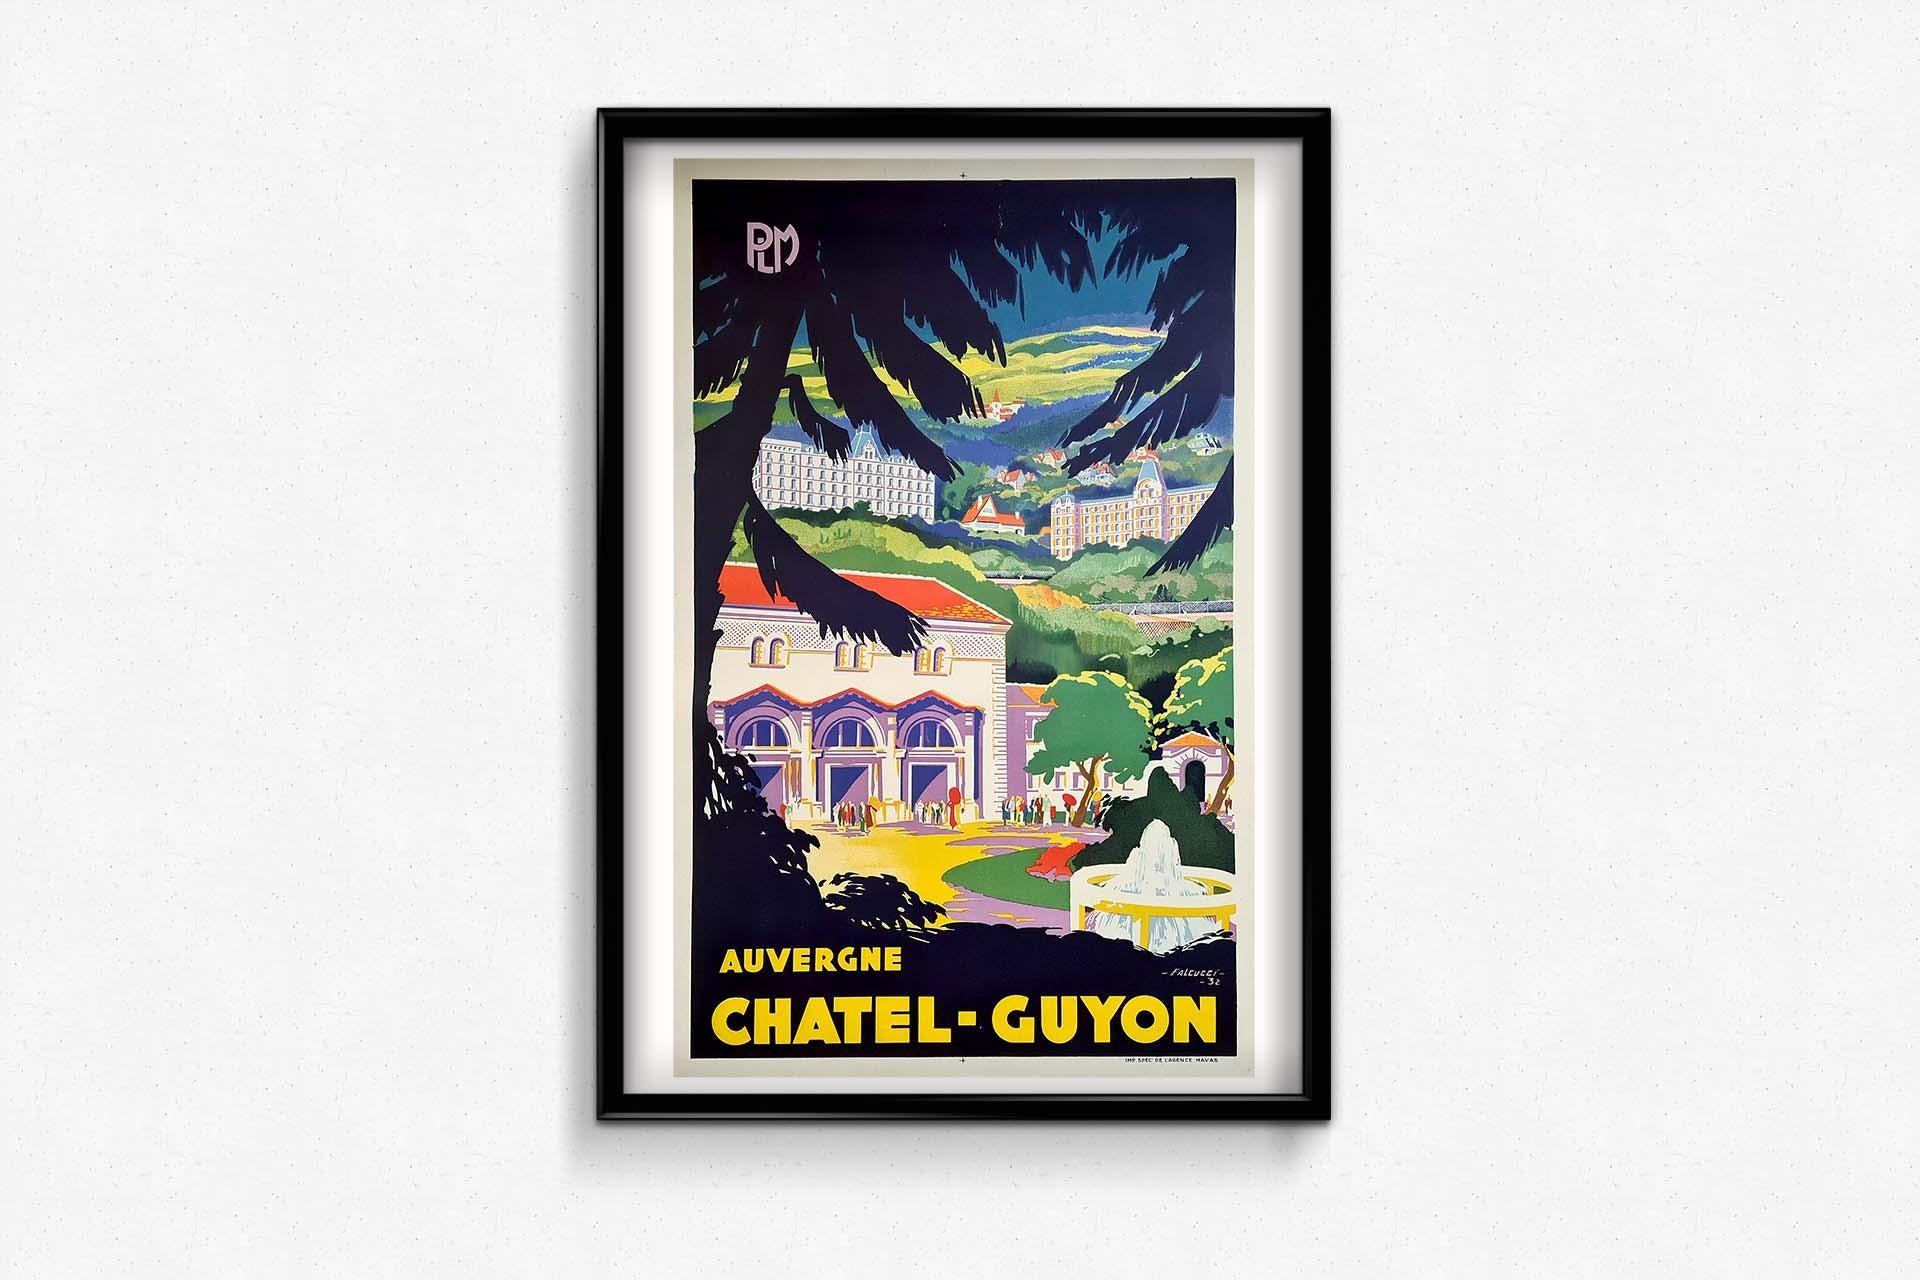 1932 Falcucci's vintage poster for PLM - Auvergne Chatel Guyon - Art Deco Print by Robert Falcucci